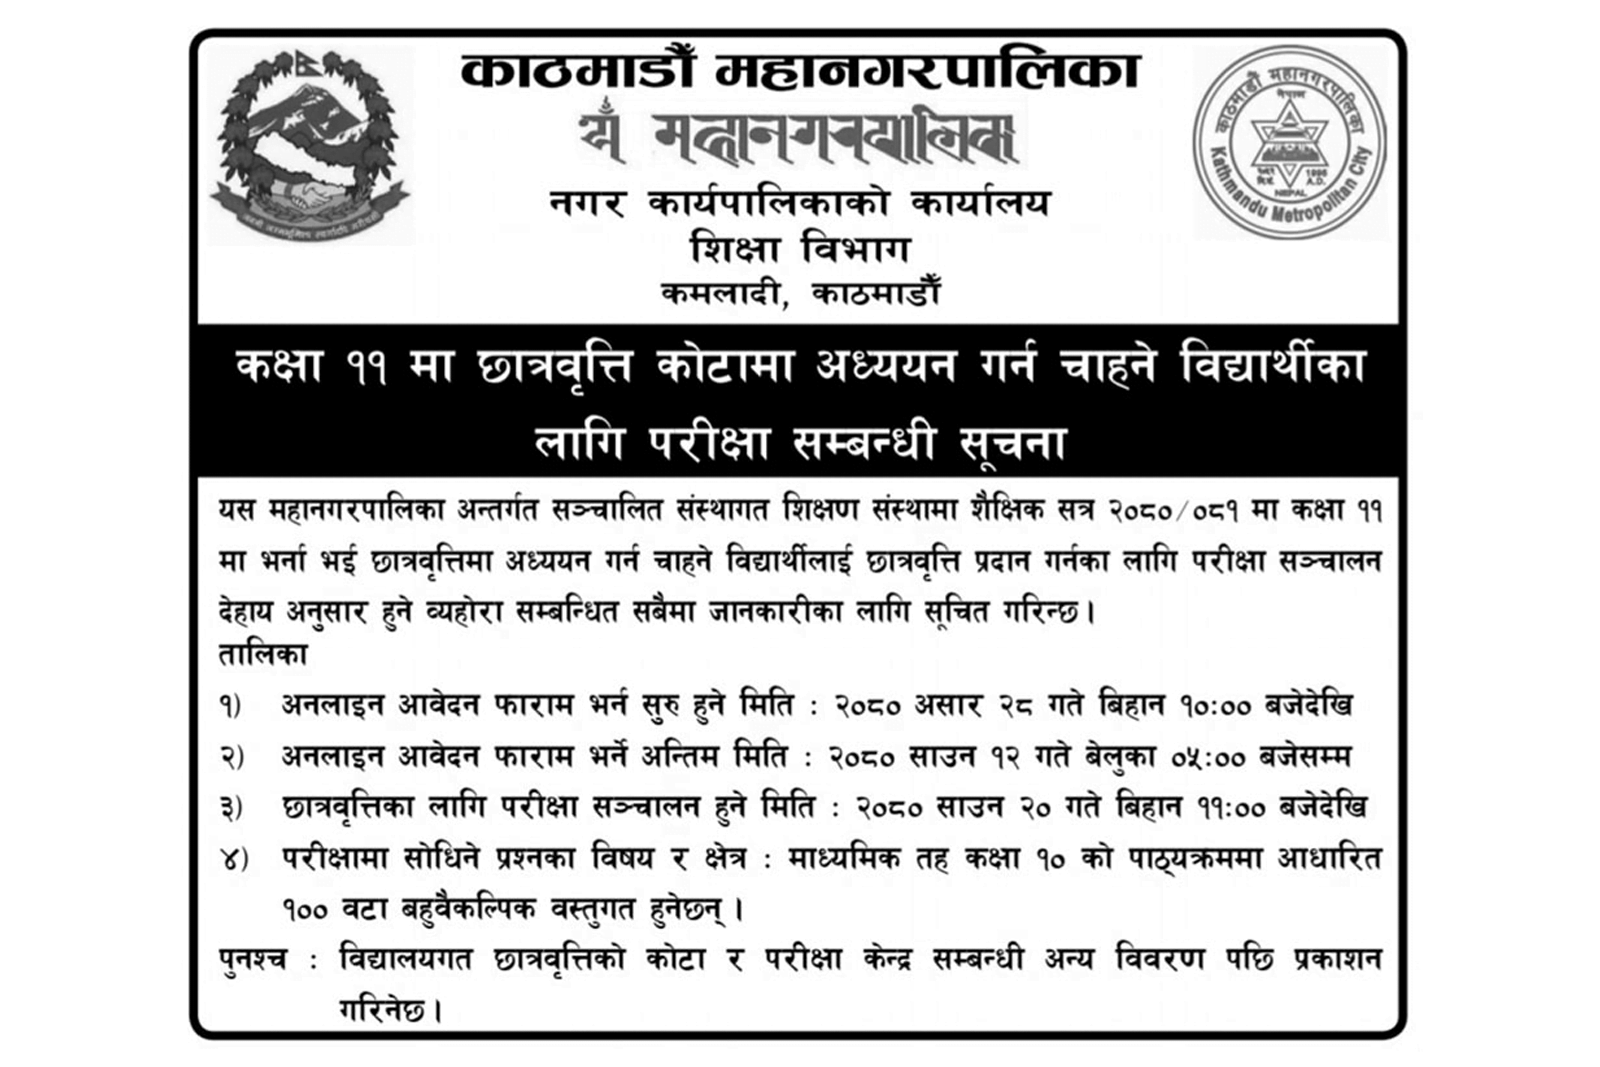 Kathmandu Metropolitan City Class 11 Scholarship Notice 2080